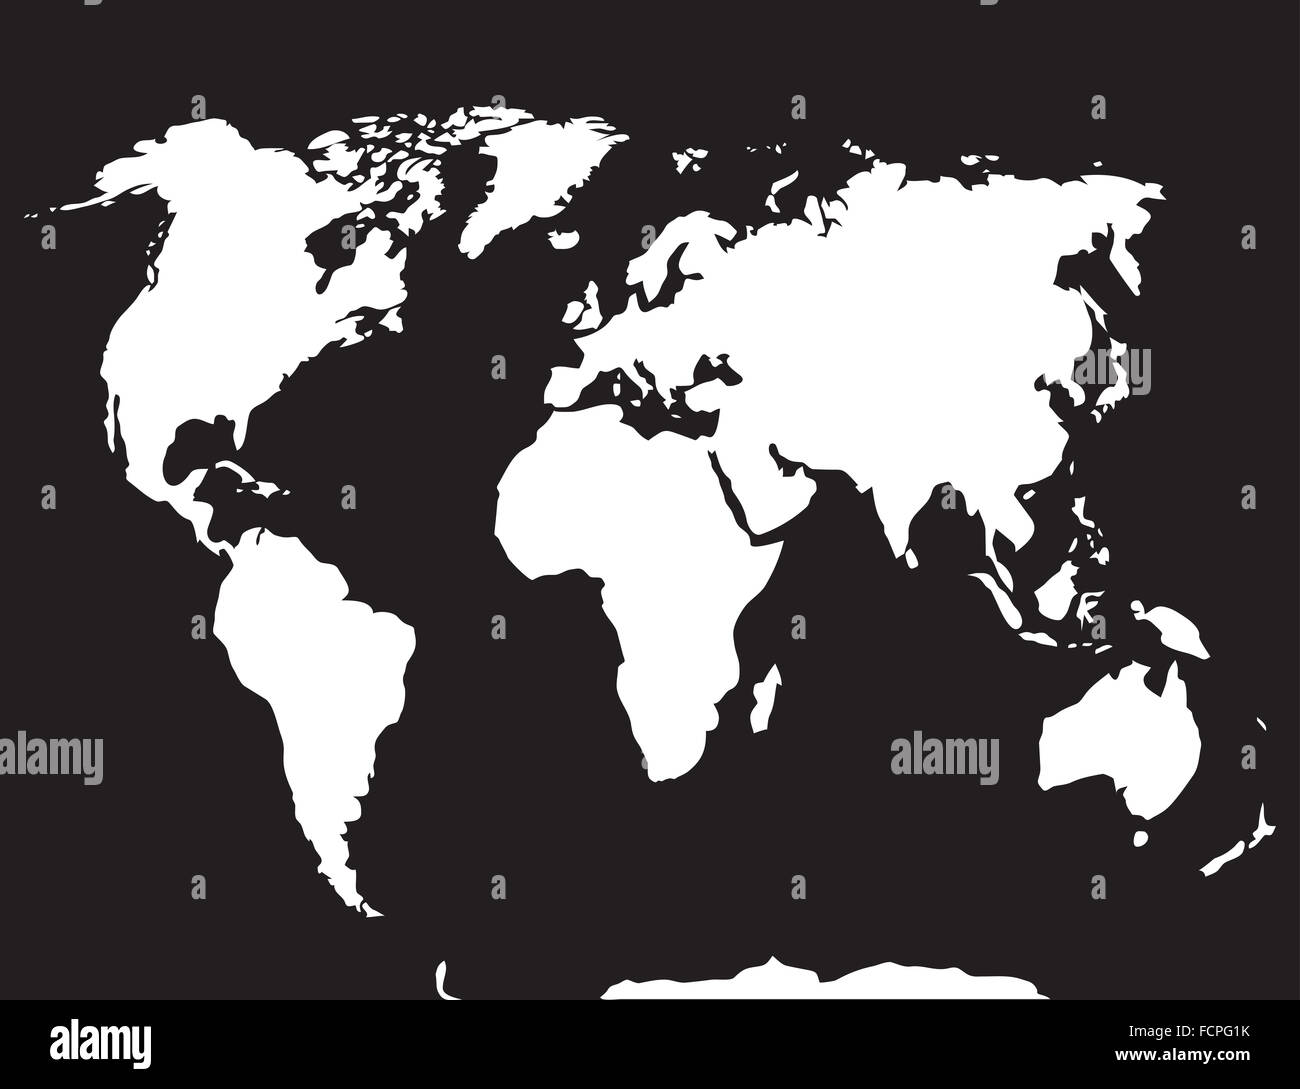 Map monde noir blanc. Atlas globe terre, continent et l'océan, l'Europe et les pays. Vector art abstract inhabituelle Banque D'Images